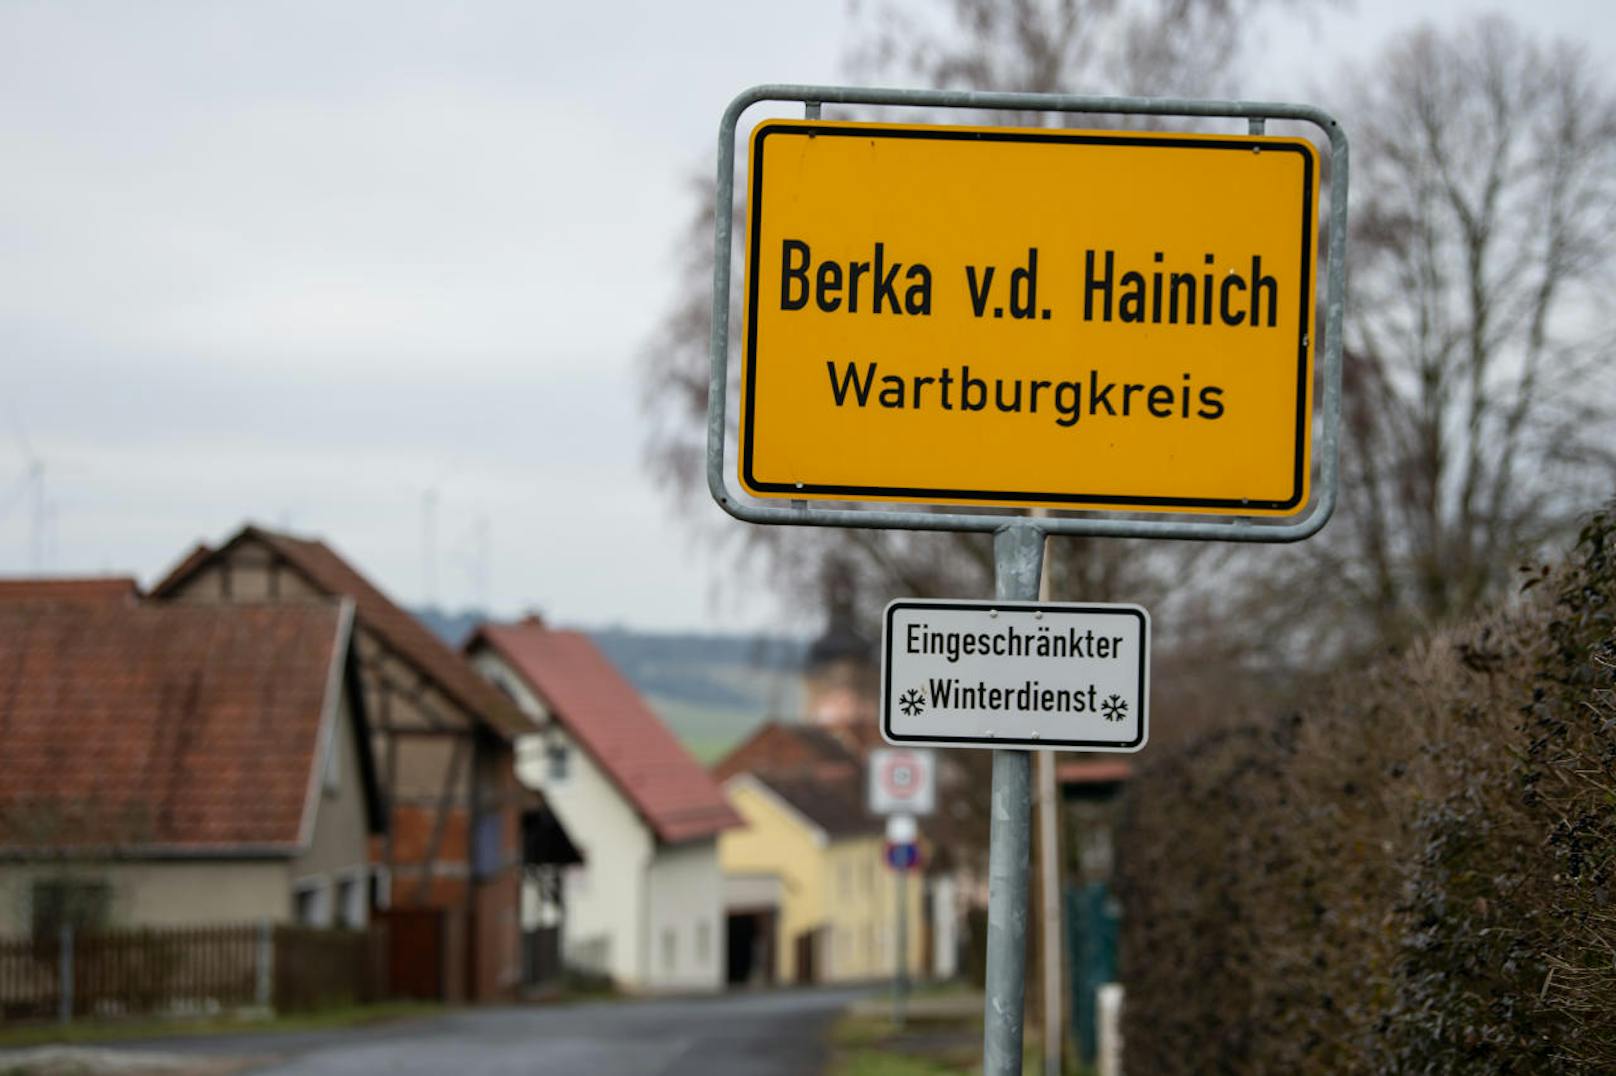 Aktuell laufen die Ermittlungen zur genauen Unfallursache. Klar ist: Bereits an der Ortsgrenze der Gemeinde Berka vor dem Hainich wird vor eingeschränktem Winterdienst gewarnt.